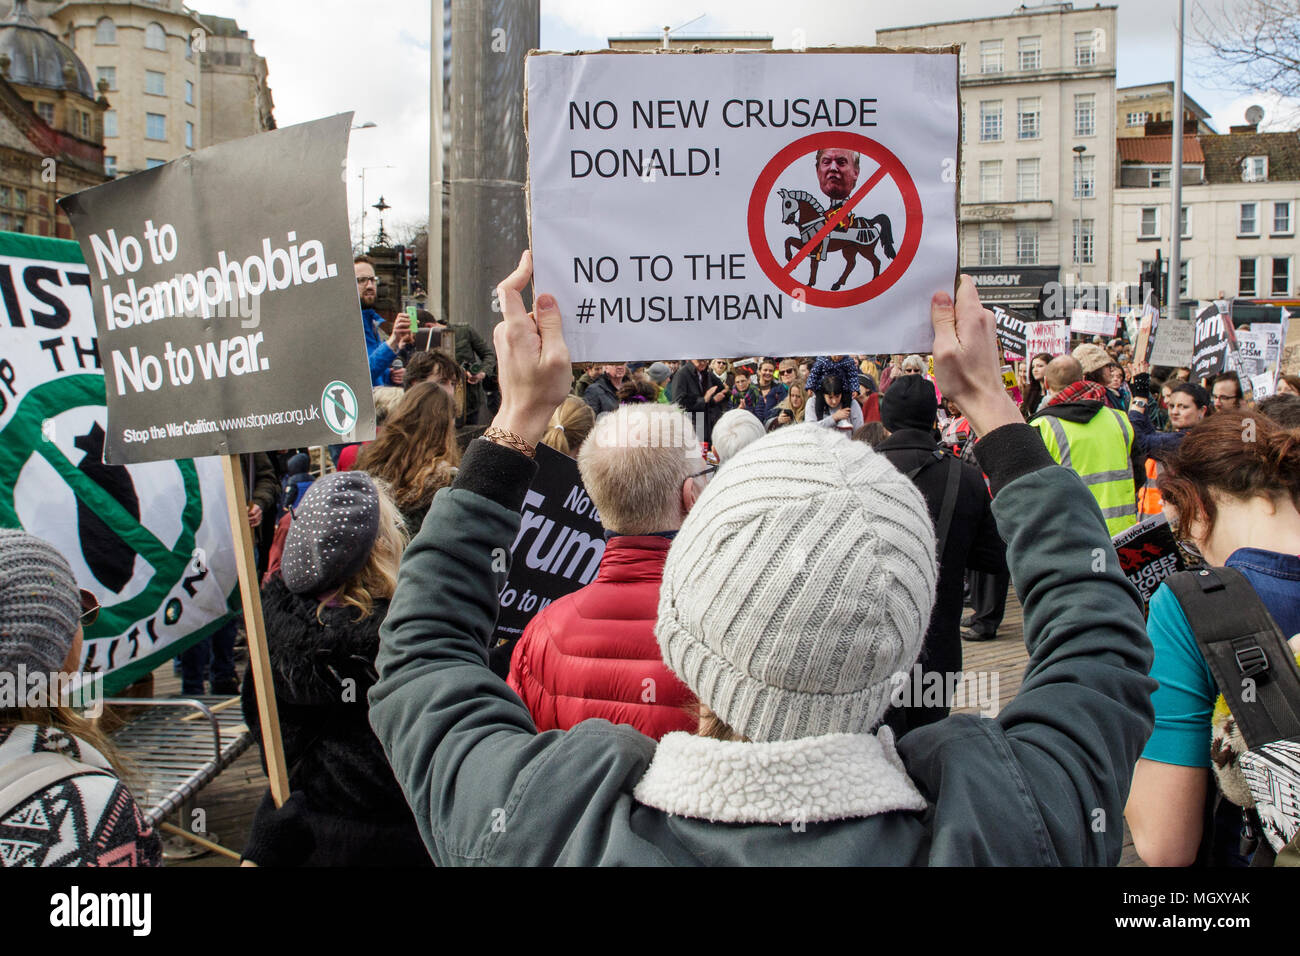 Bristol, Reino Unido, 04-02-17 que los manifestantes llevaban carteles anti trump se muestren en una marcha de protesta contra el Presidente Trump musulmana de prohibición y visita de estado Foto de stock